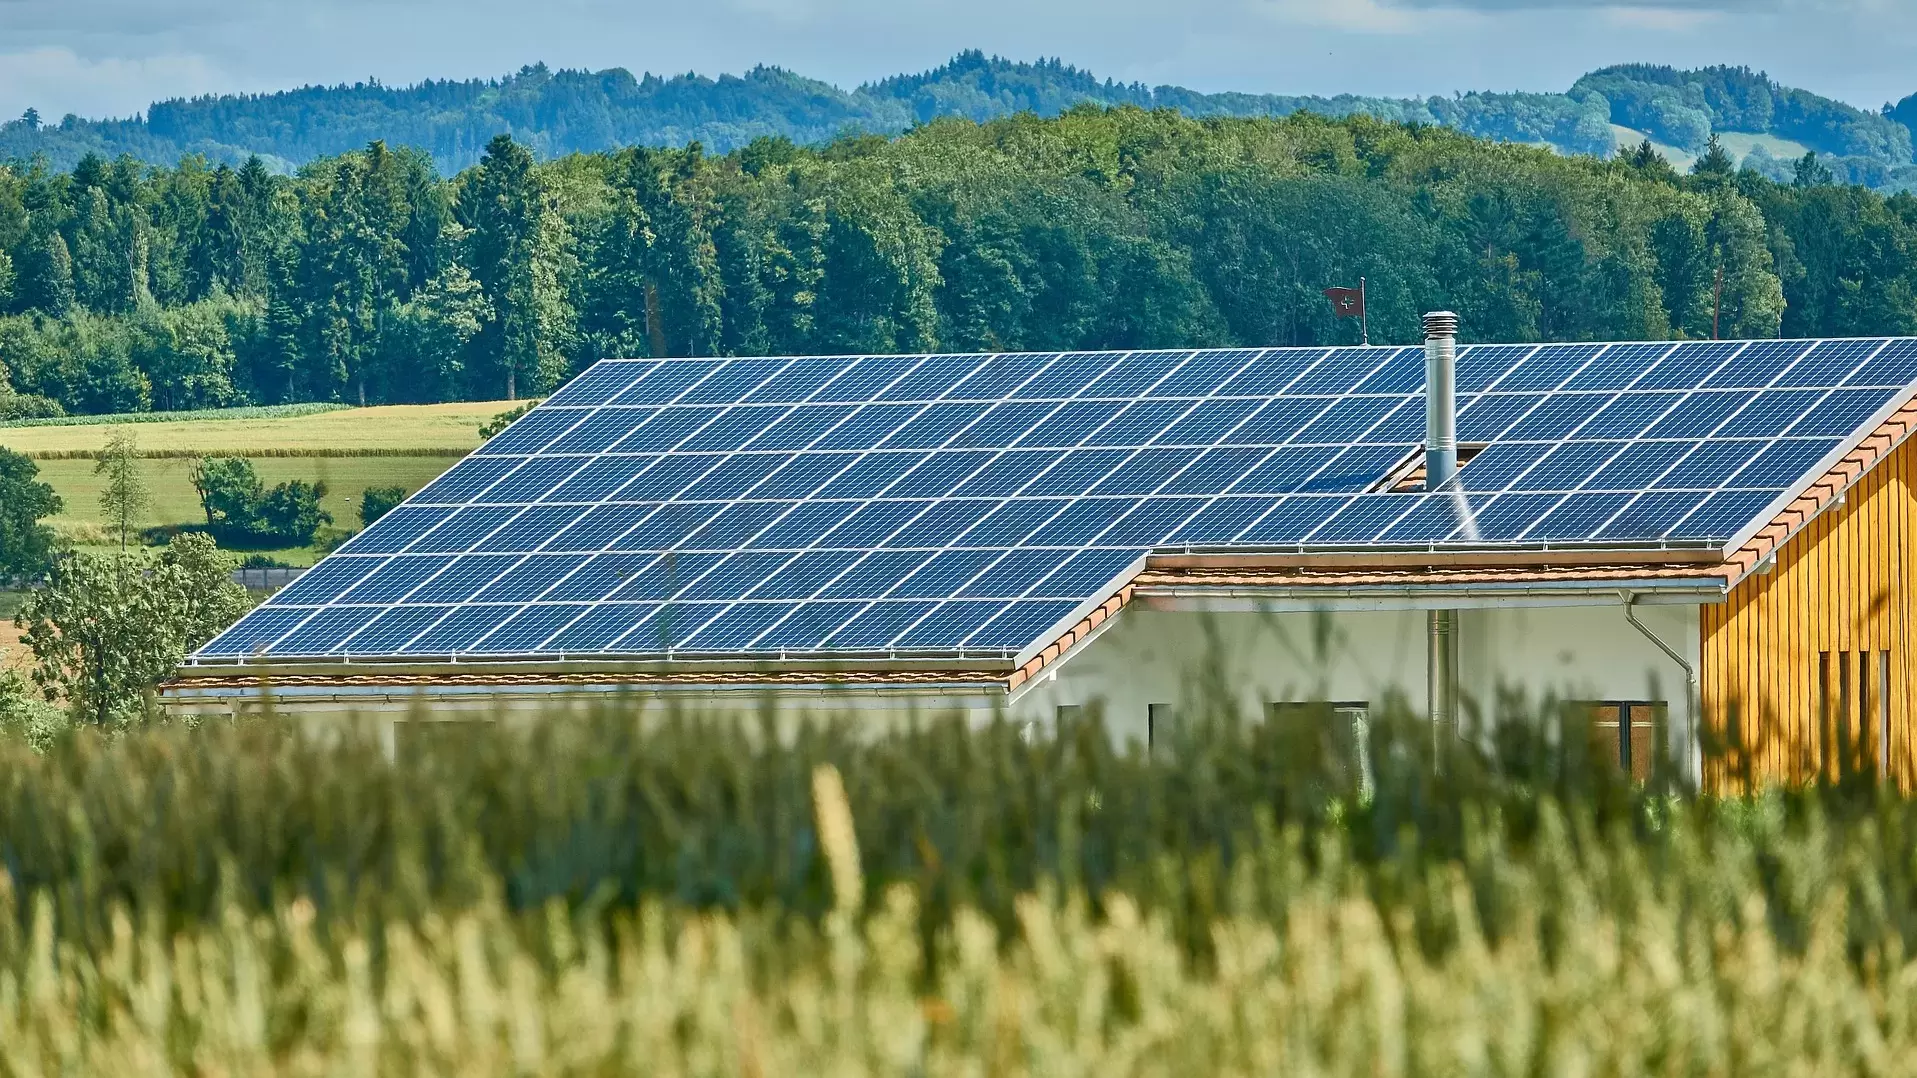 Solardach auf Landwirtschaftsgebäude